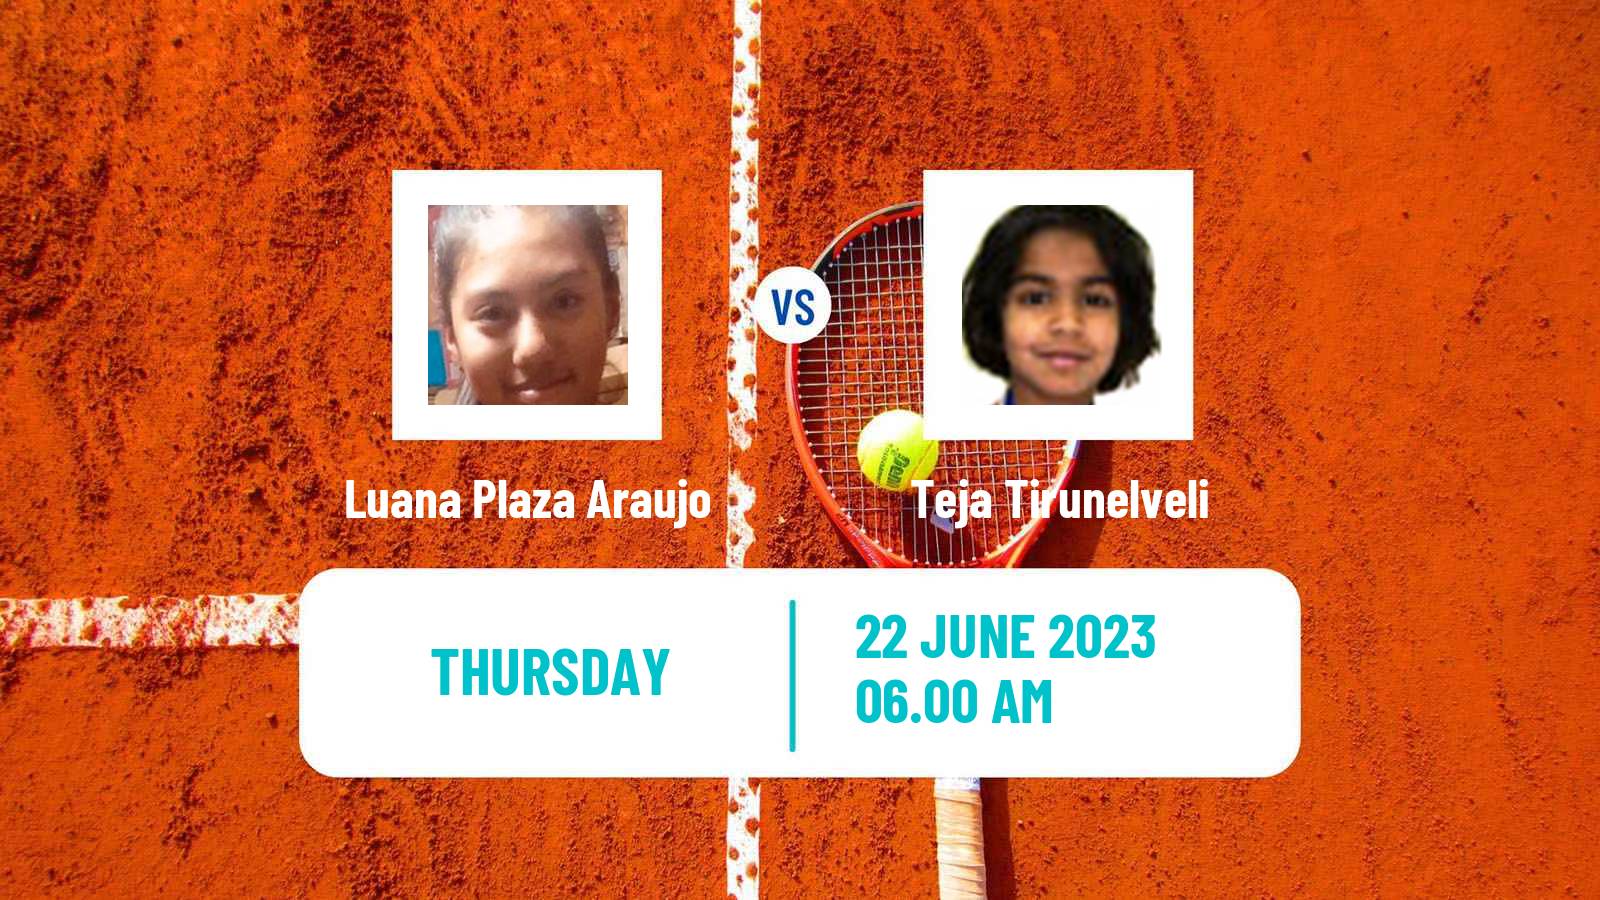 Tennis ITF W15 Monastir 20 Women Luana Plaza Araujo - Teja Tirunelveli